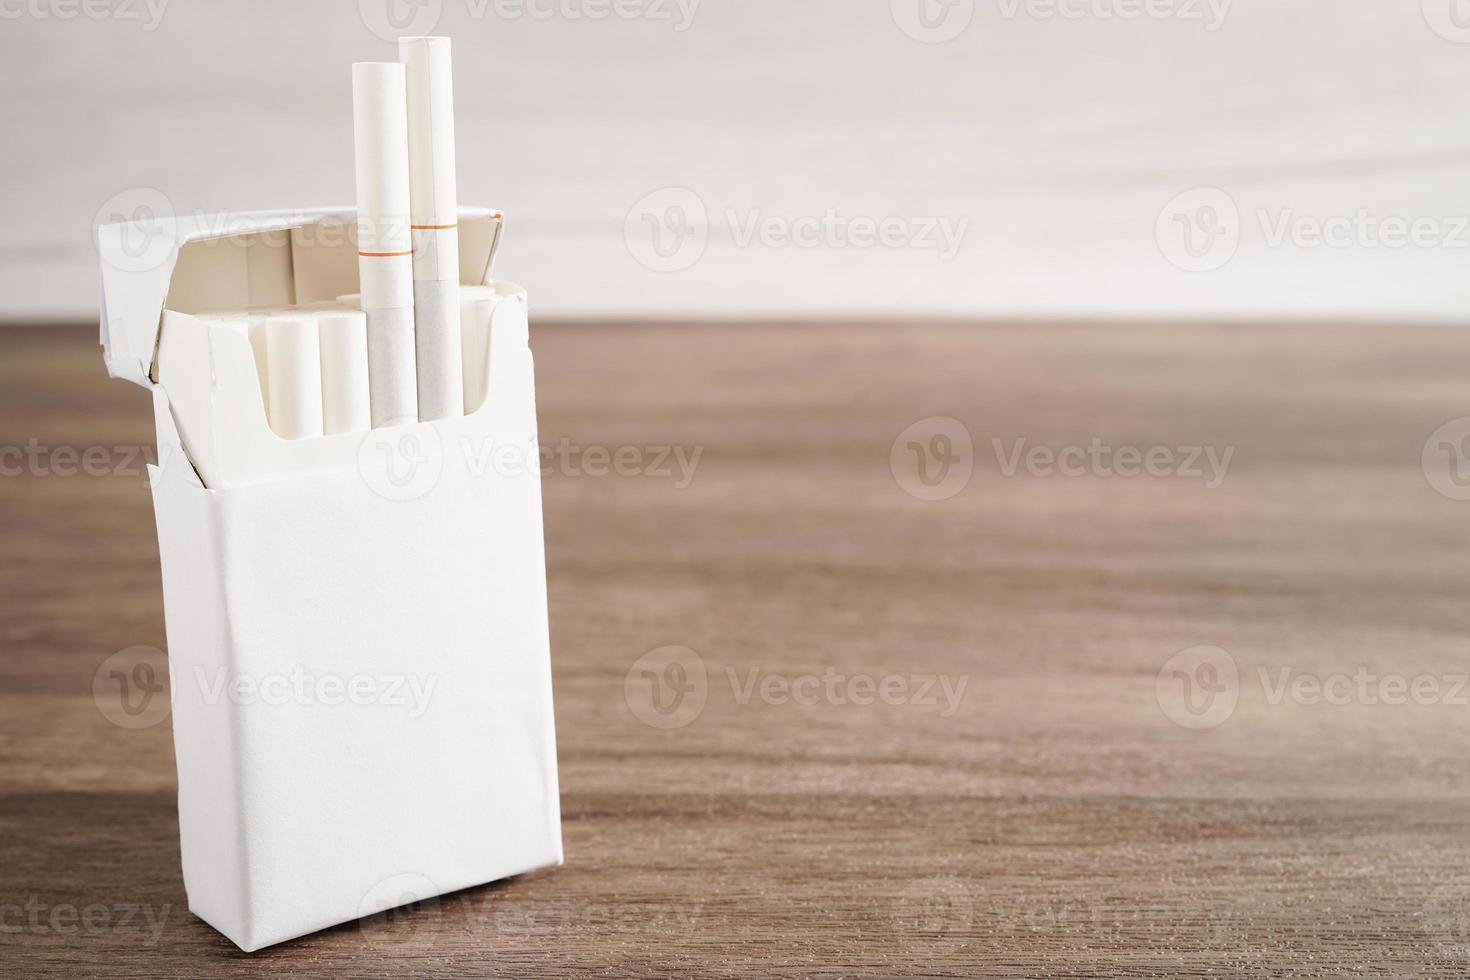 cigarett i packa, rulla tobak i papper med filtrera rör, Nej rökning begrepp. foto